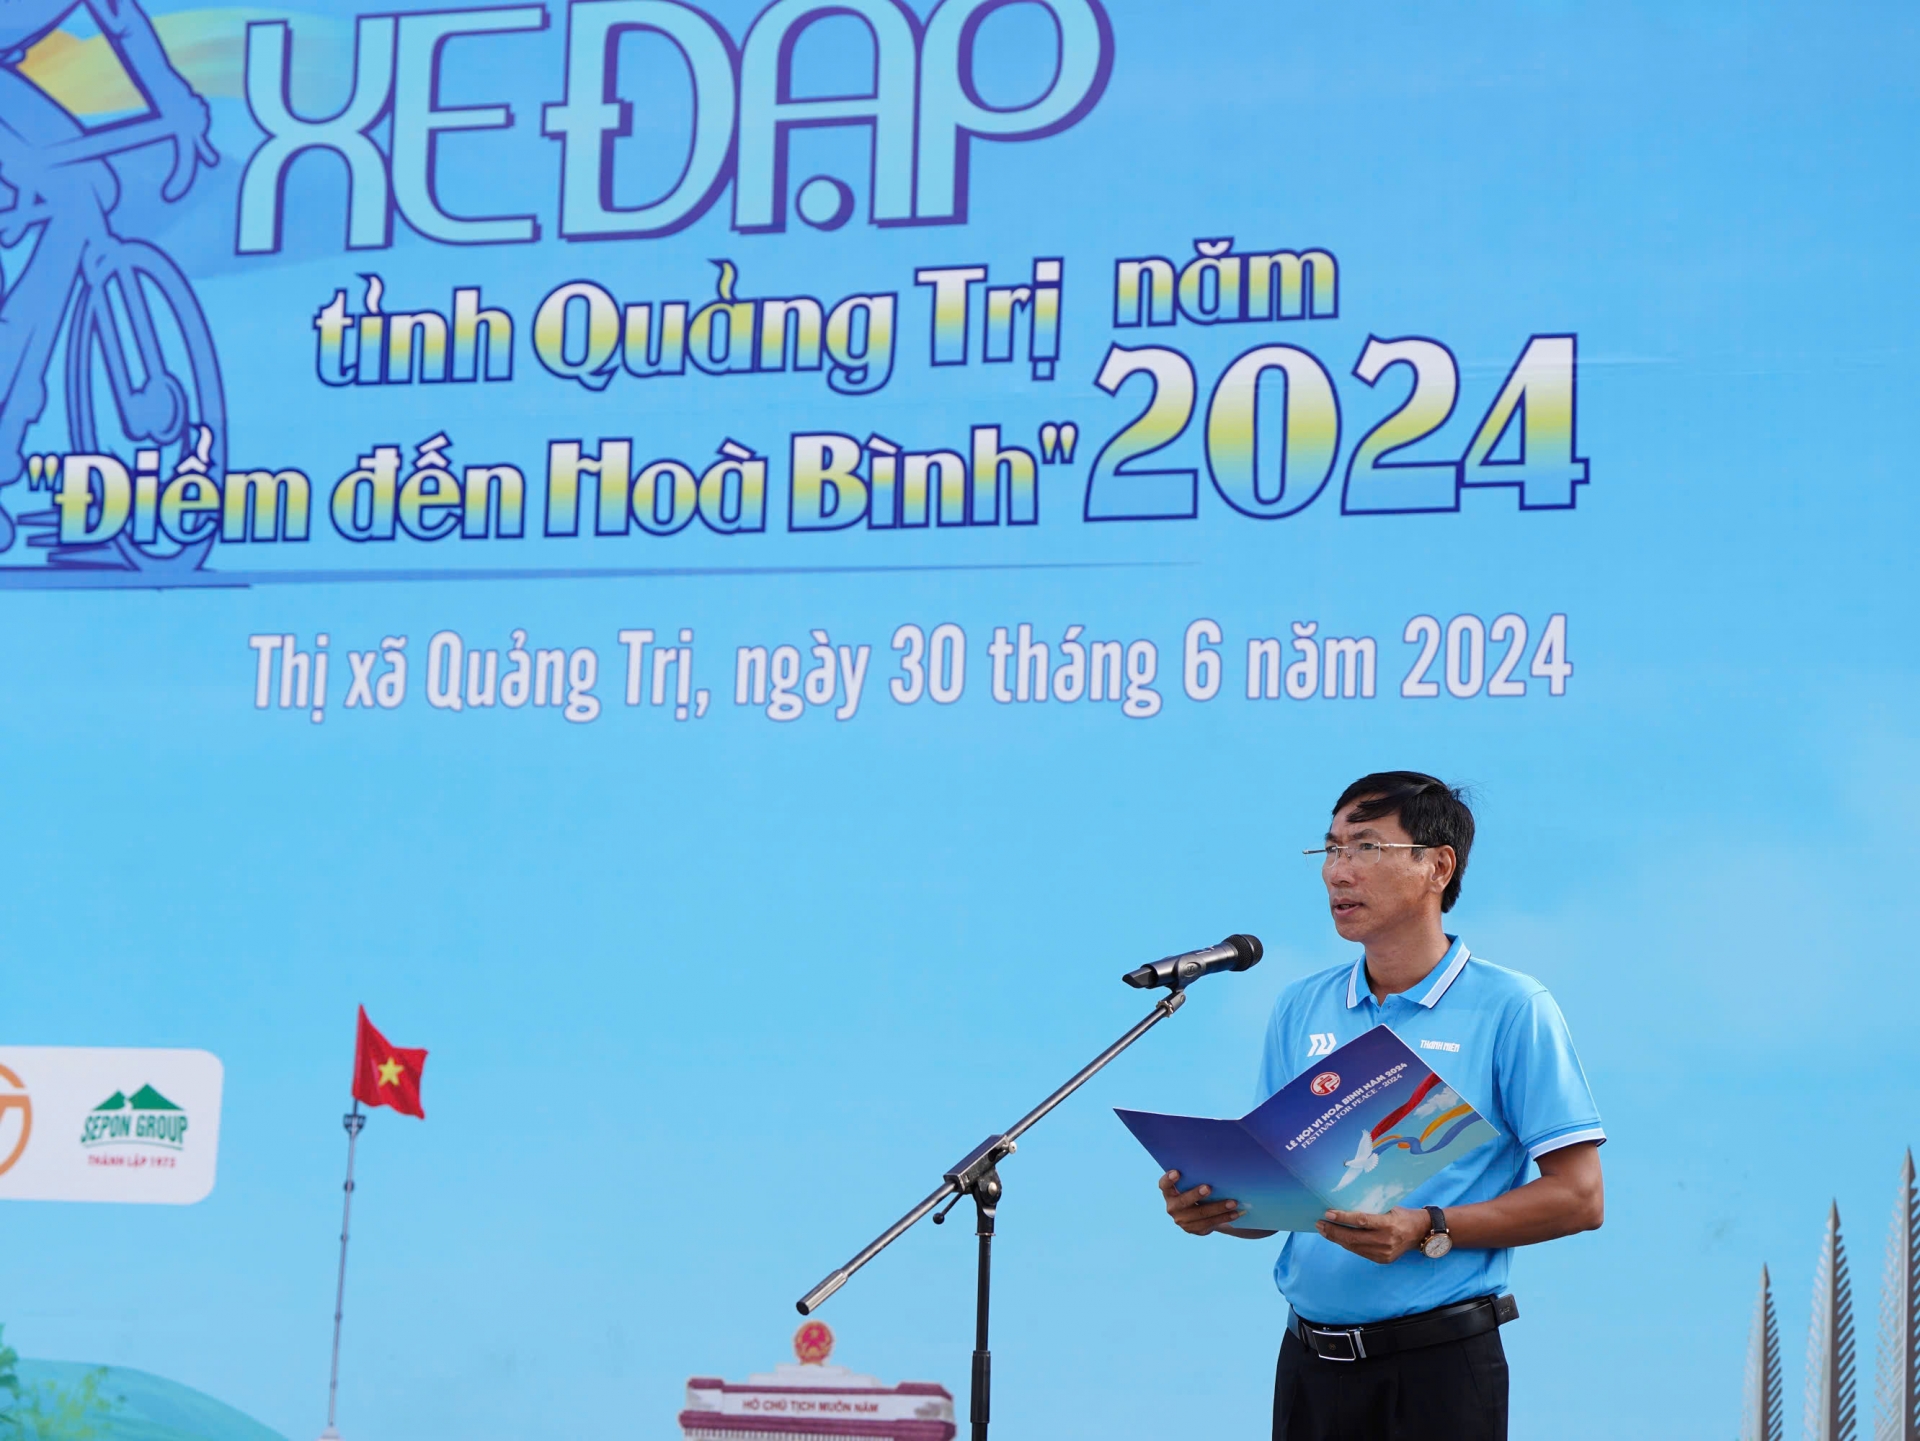 Ông Lê Minh Tuấn, Giám đốc Sở VH-TT-DL tỉnh Quảng Trị phát biểu tại buổi lễ.